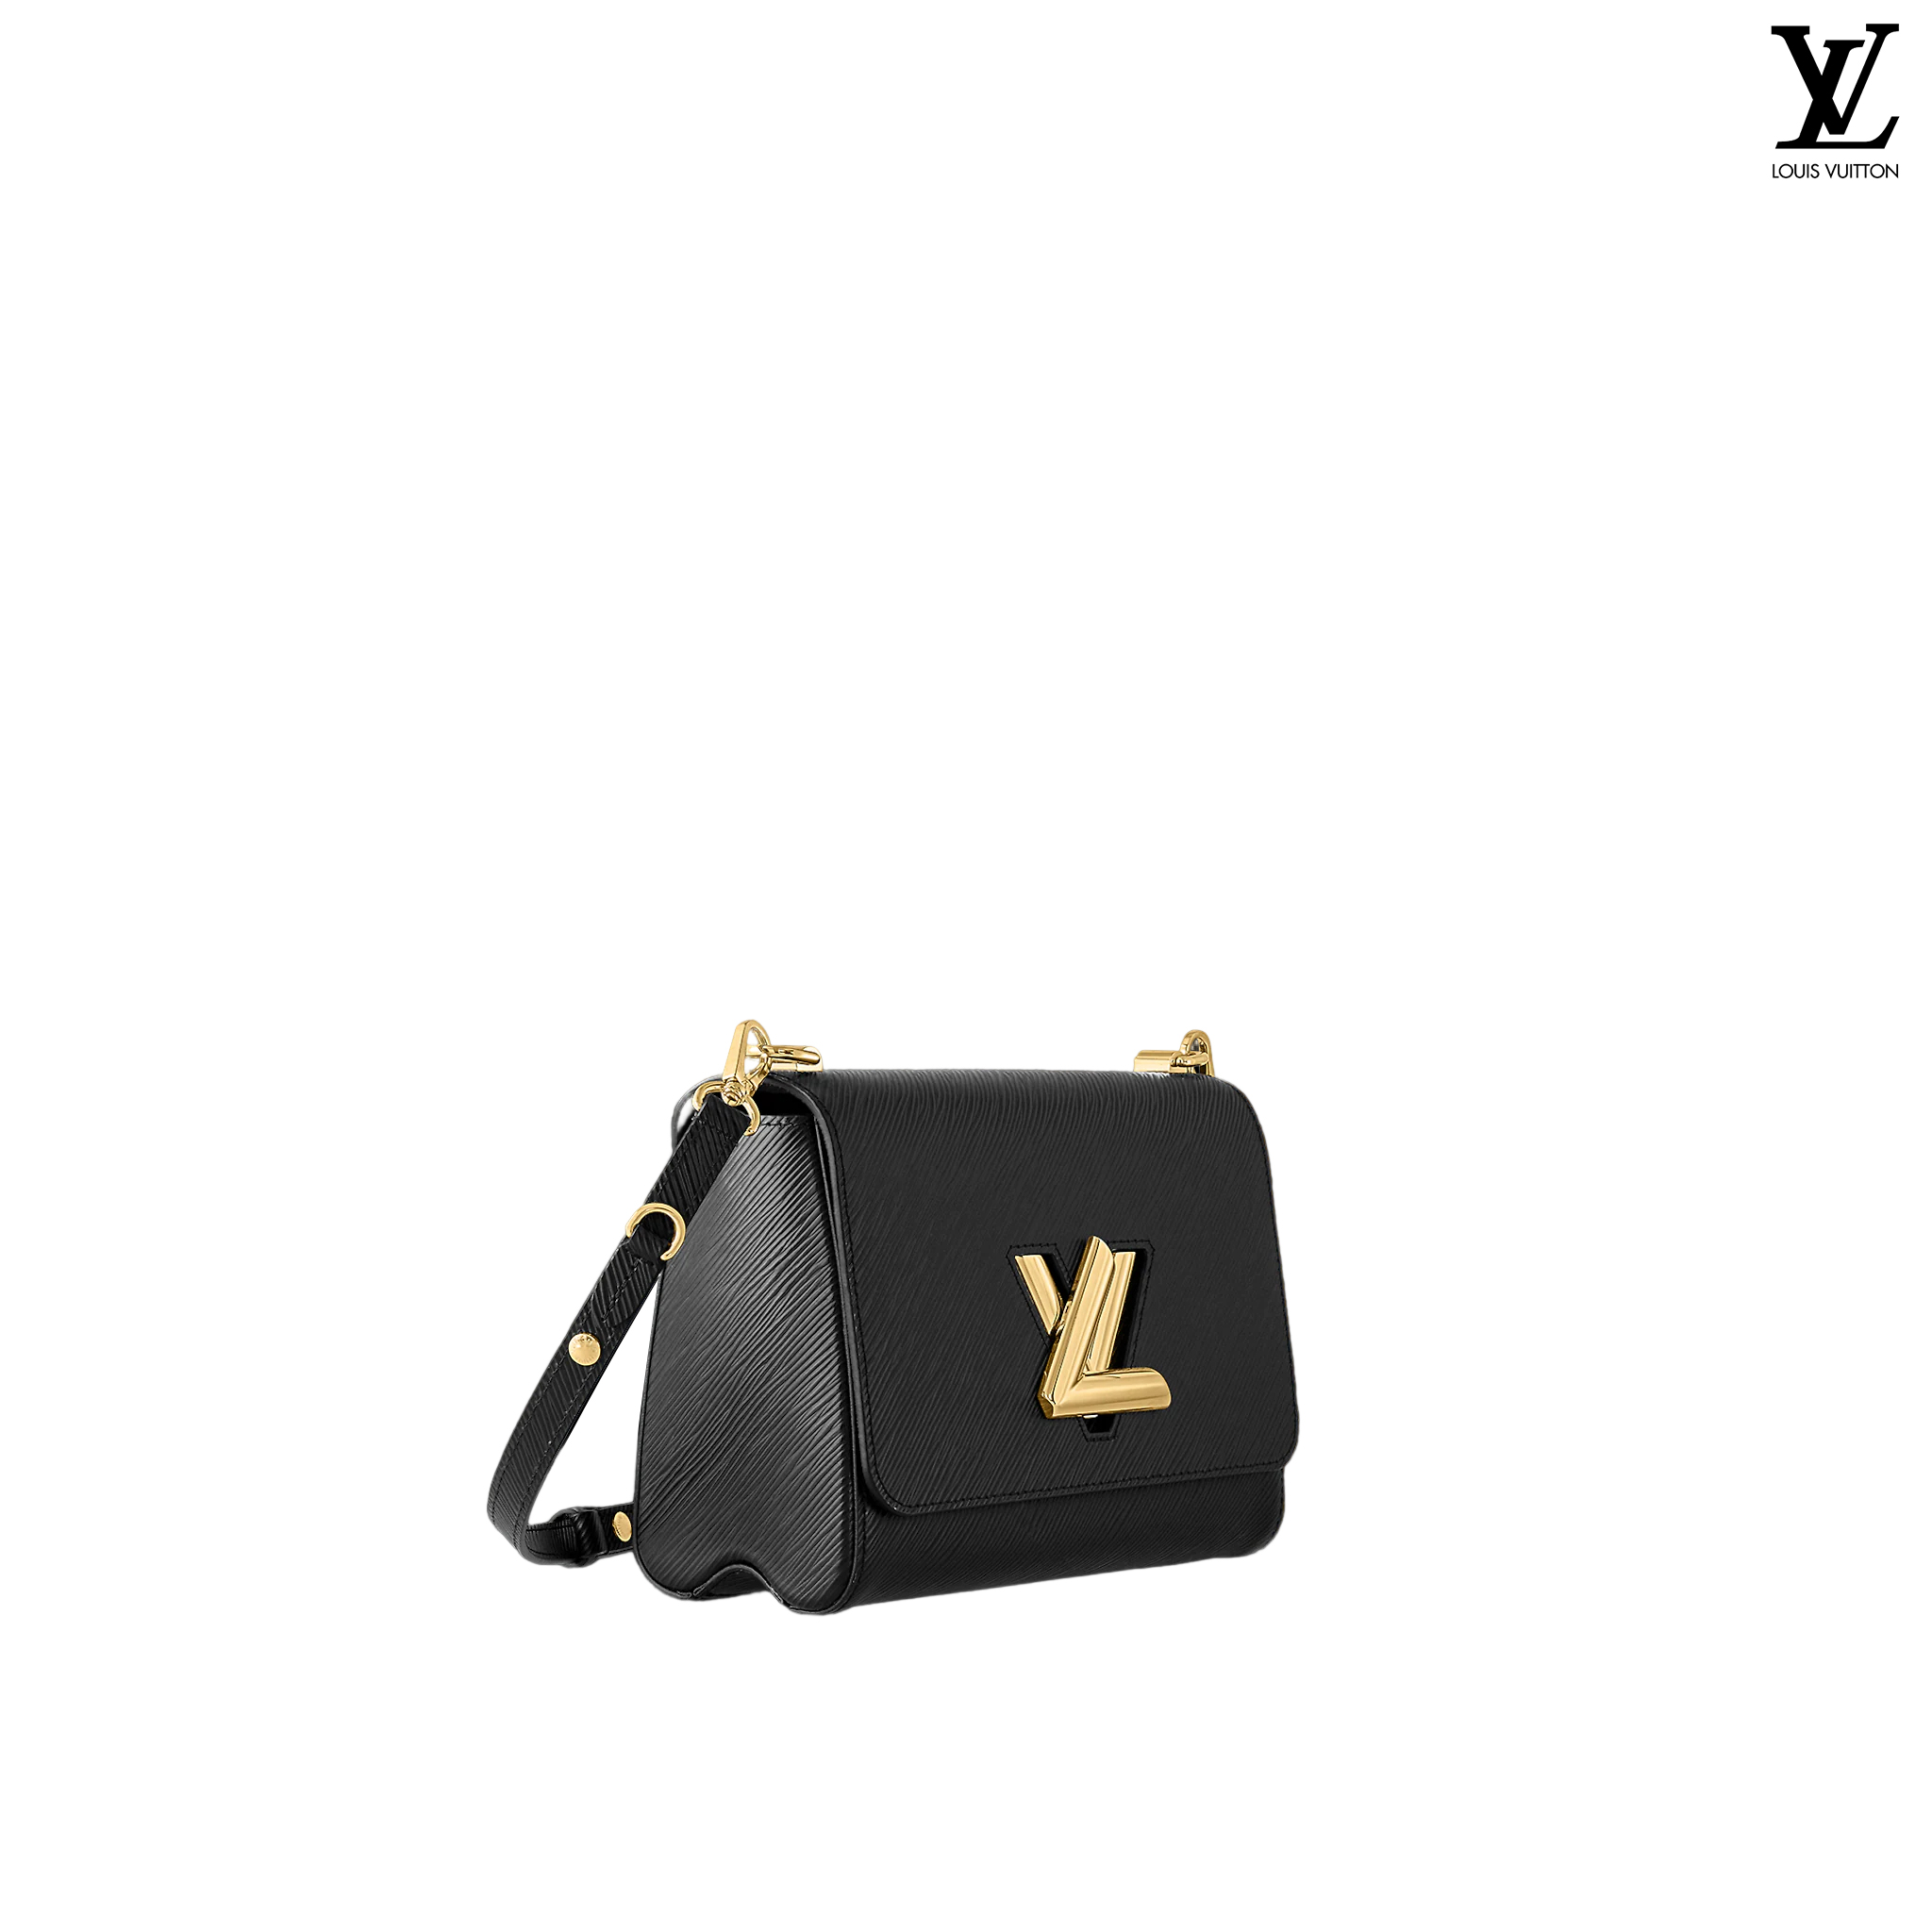 Louis Vuitton Twist PM Epi leather Shoulder bags